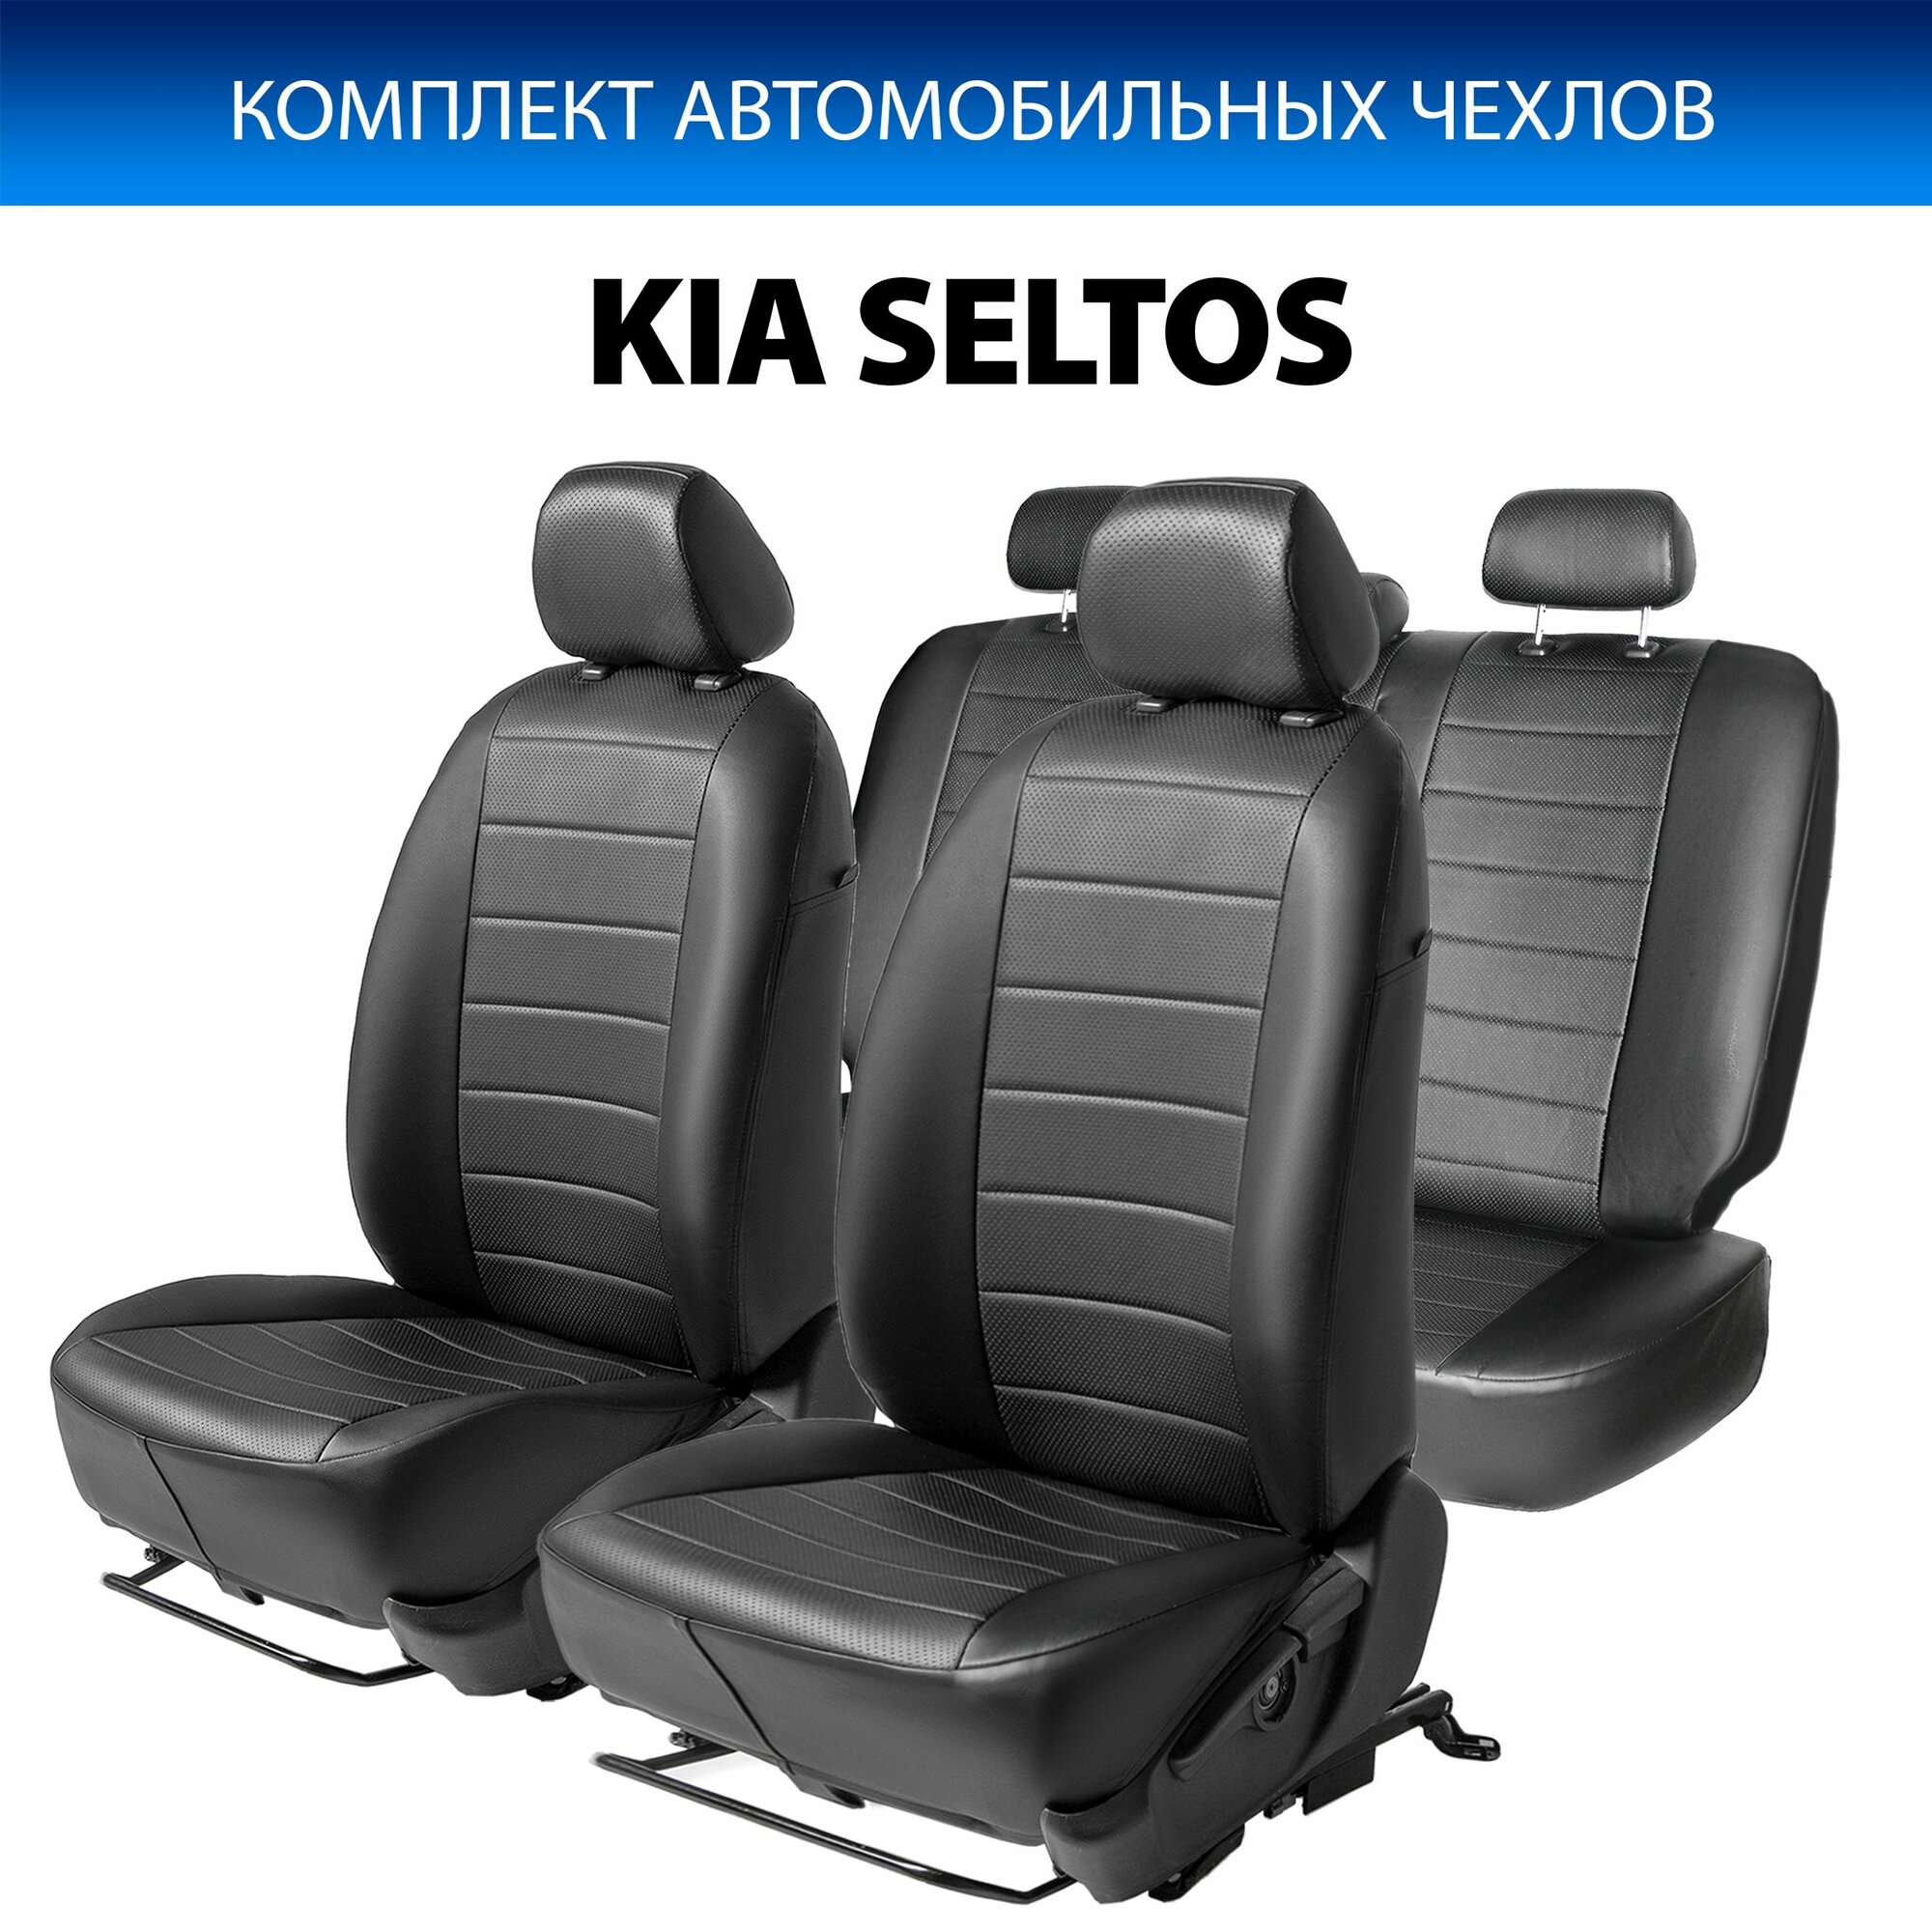 Авточехлы (комплект) для Киа Селтос 2019-2021 год выпуска (Kia Seltos) RIVAL SC.2810.1